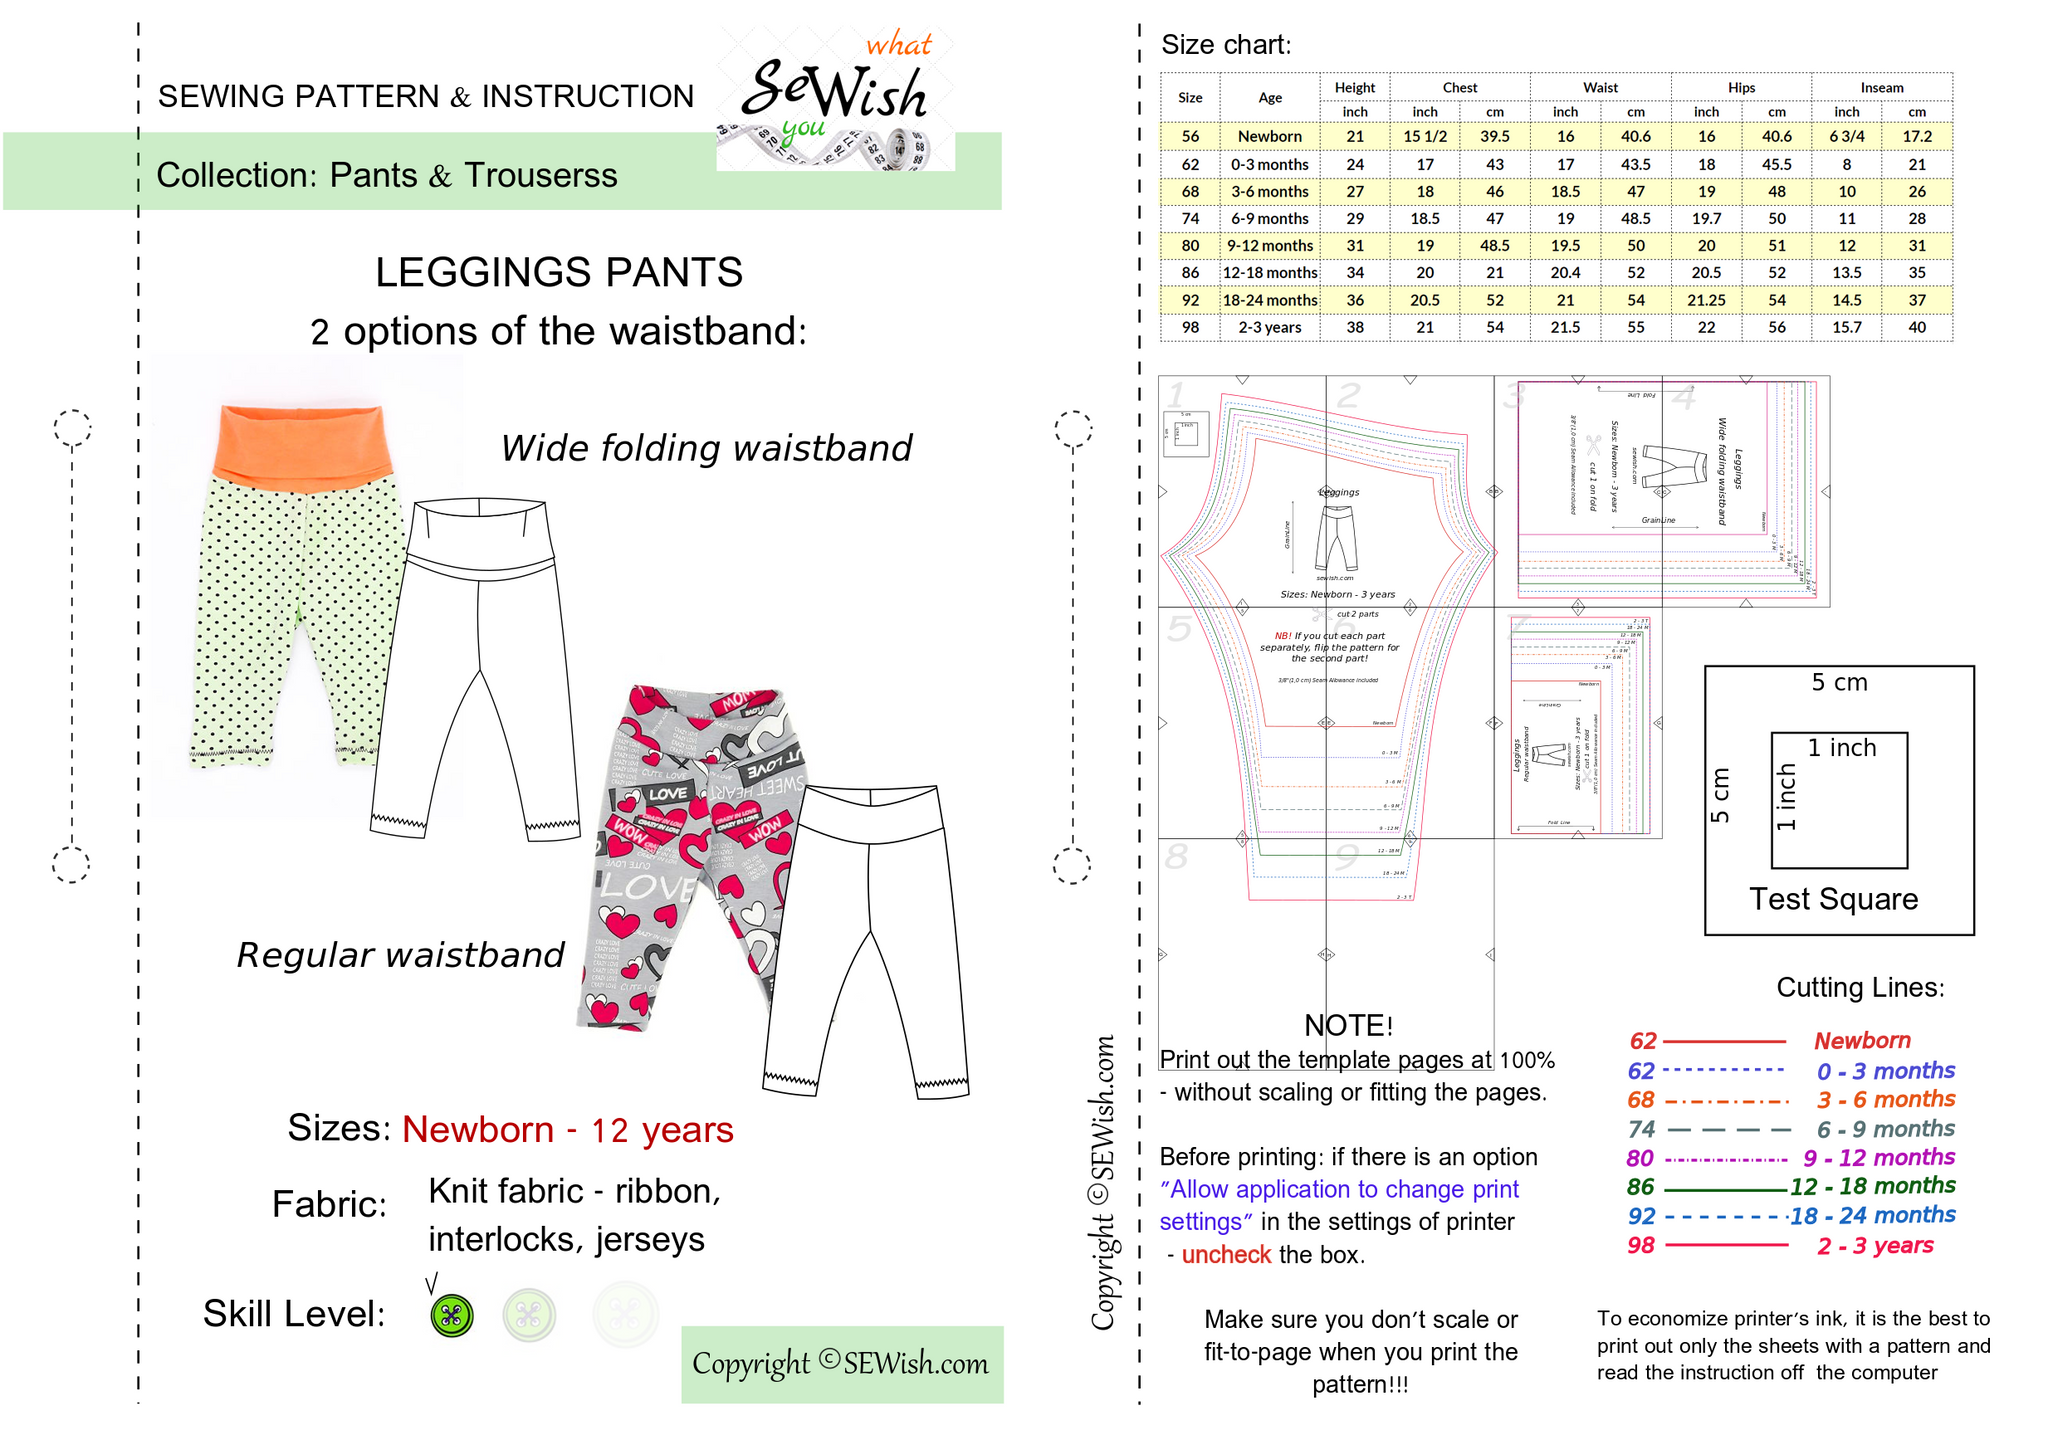 Women's Leggings Block PDF Sewing Pattern Size XS 6X Plus Size